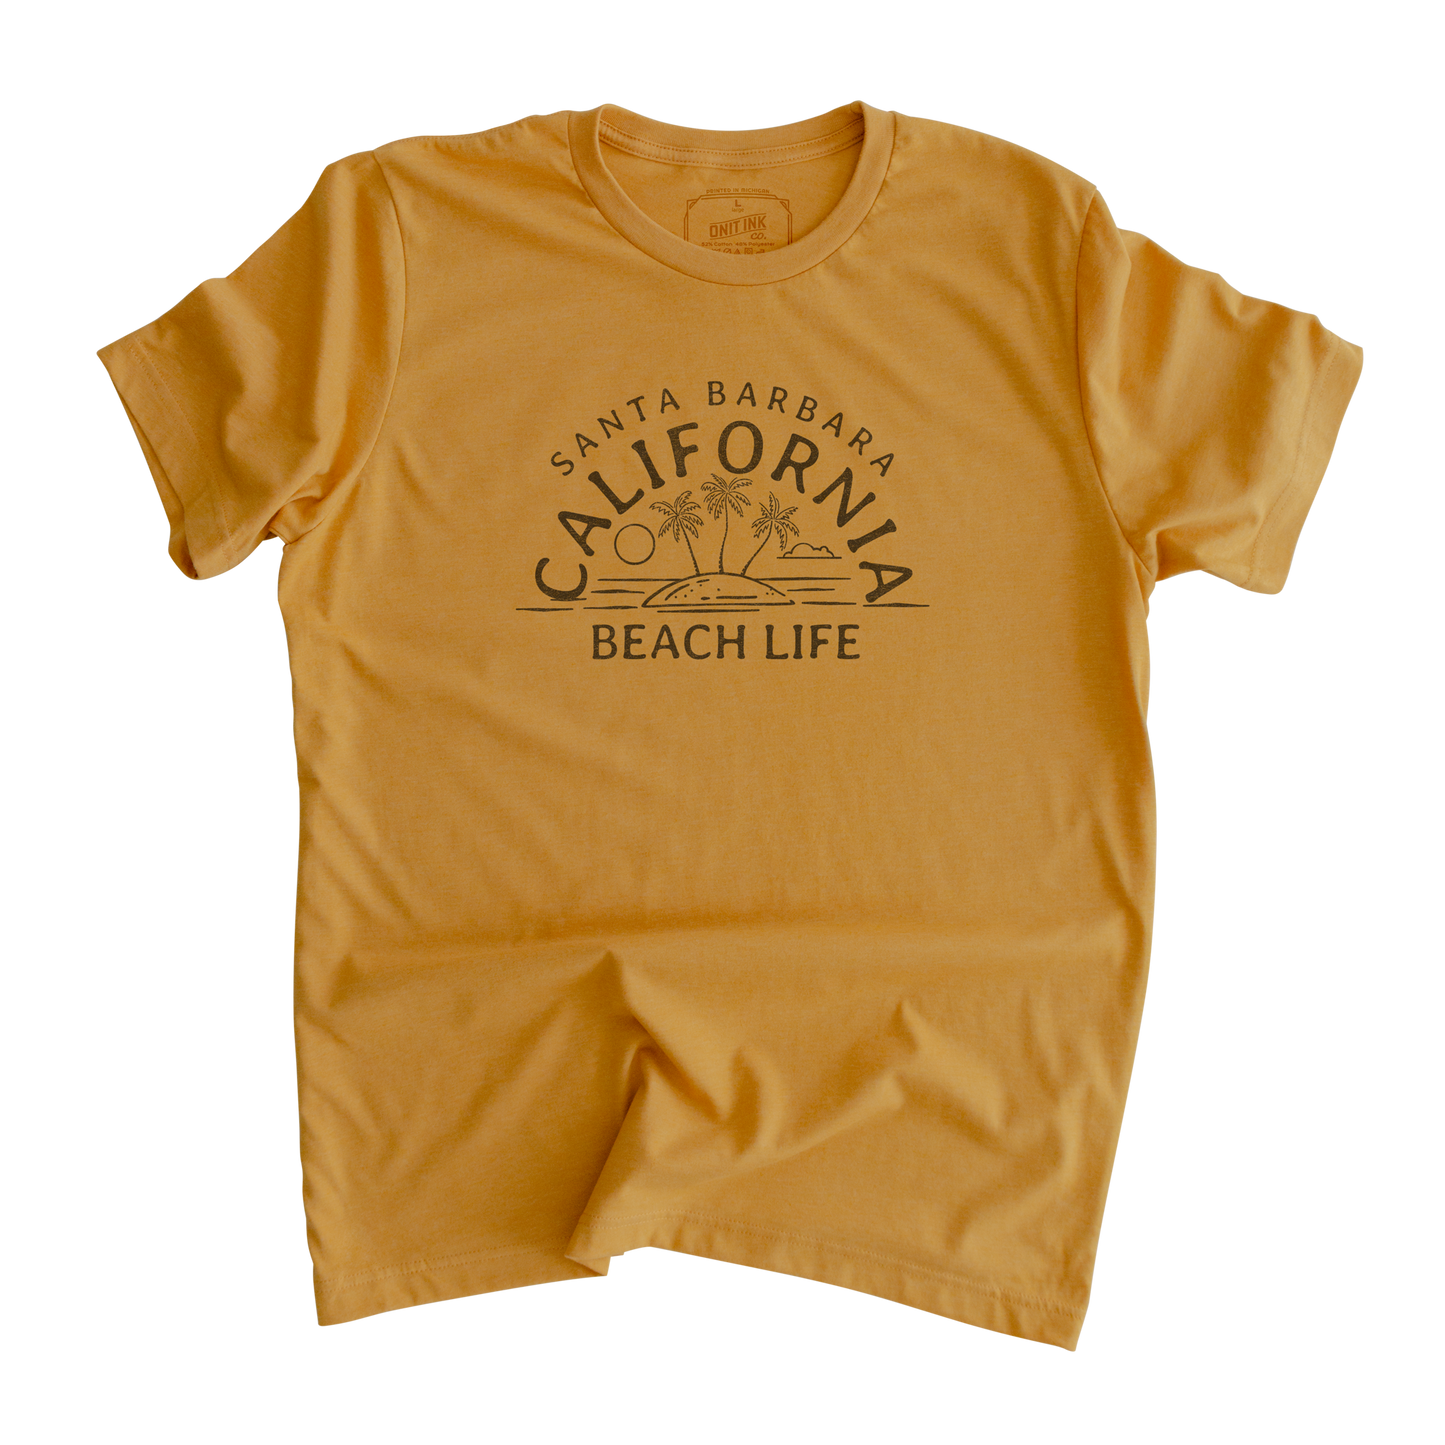 Beach Life Santa Barbara California T-Shirt